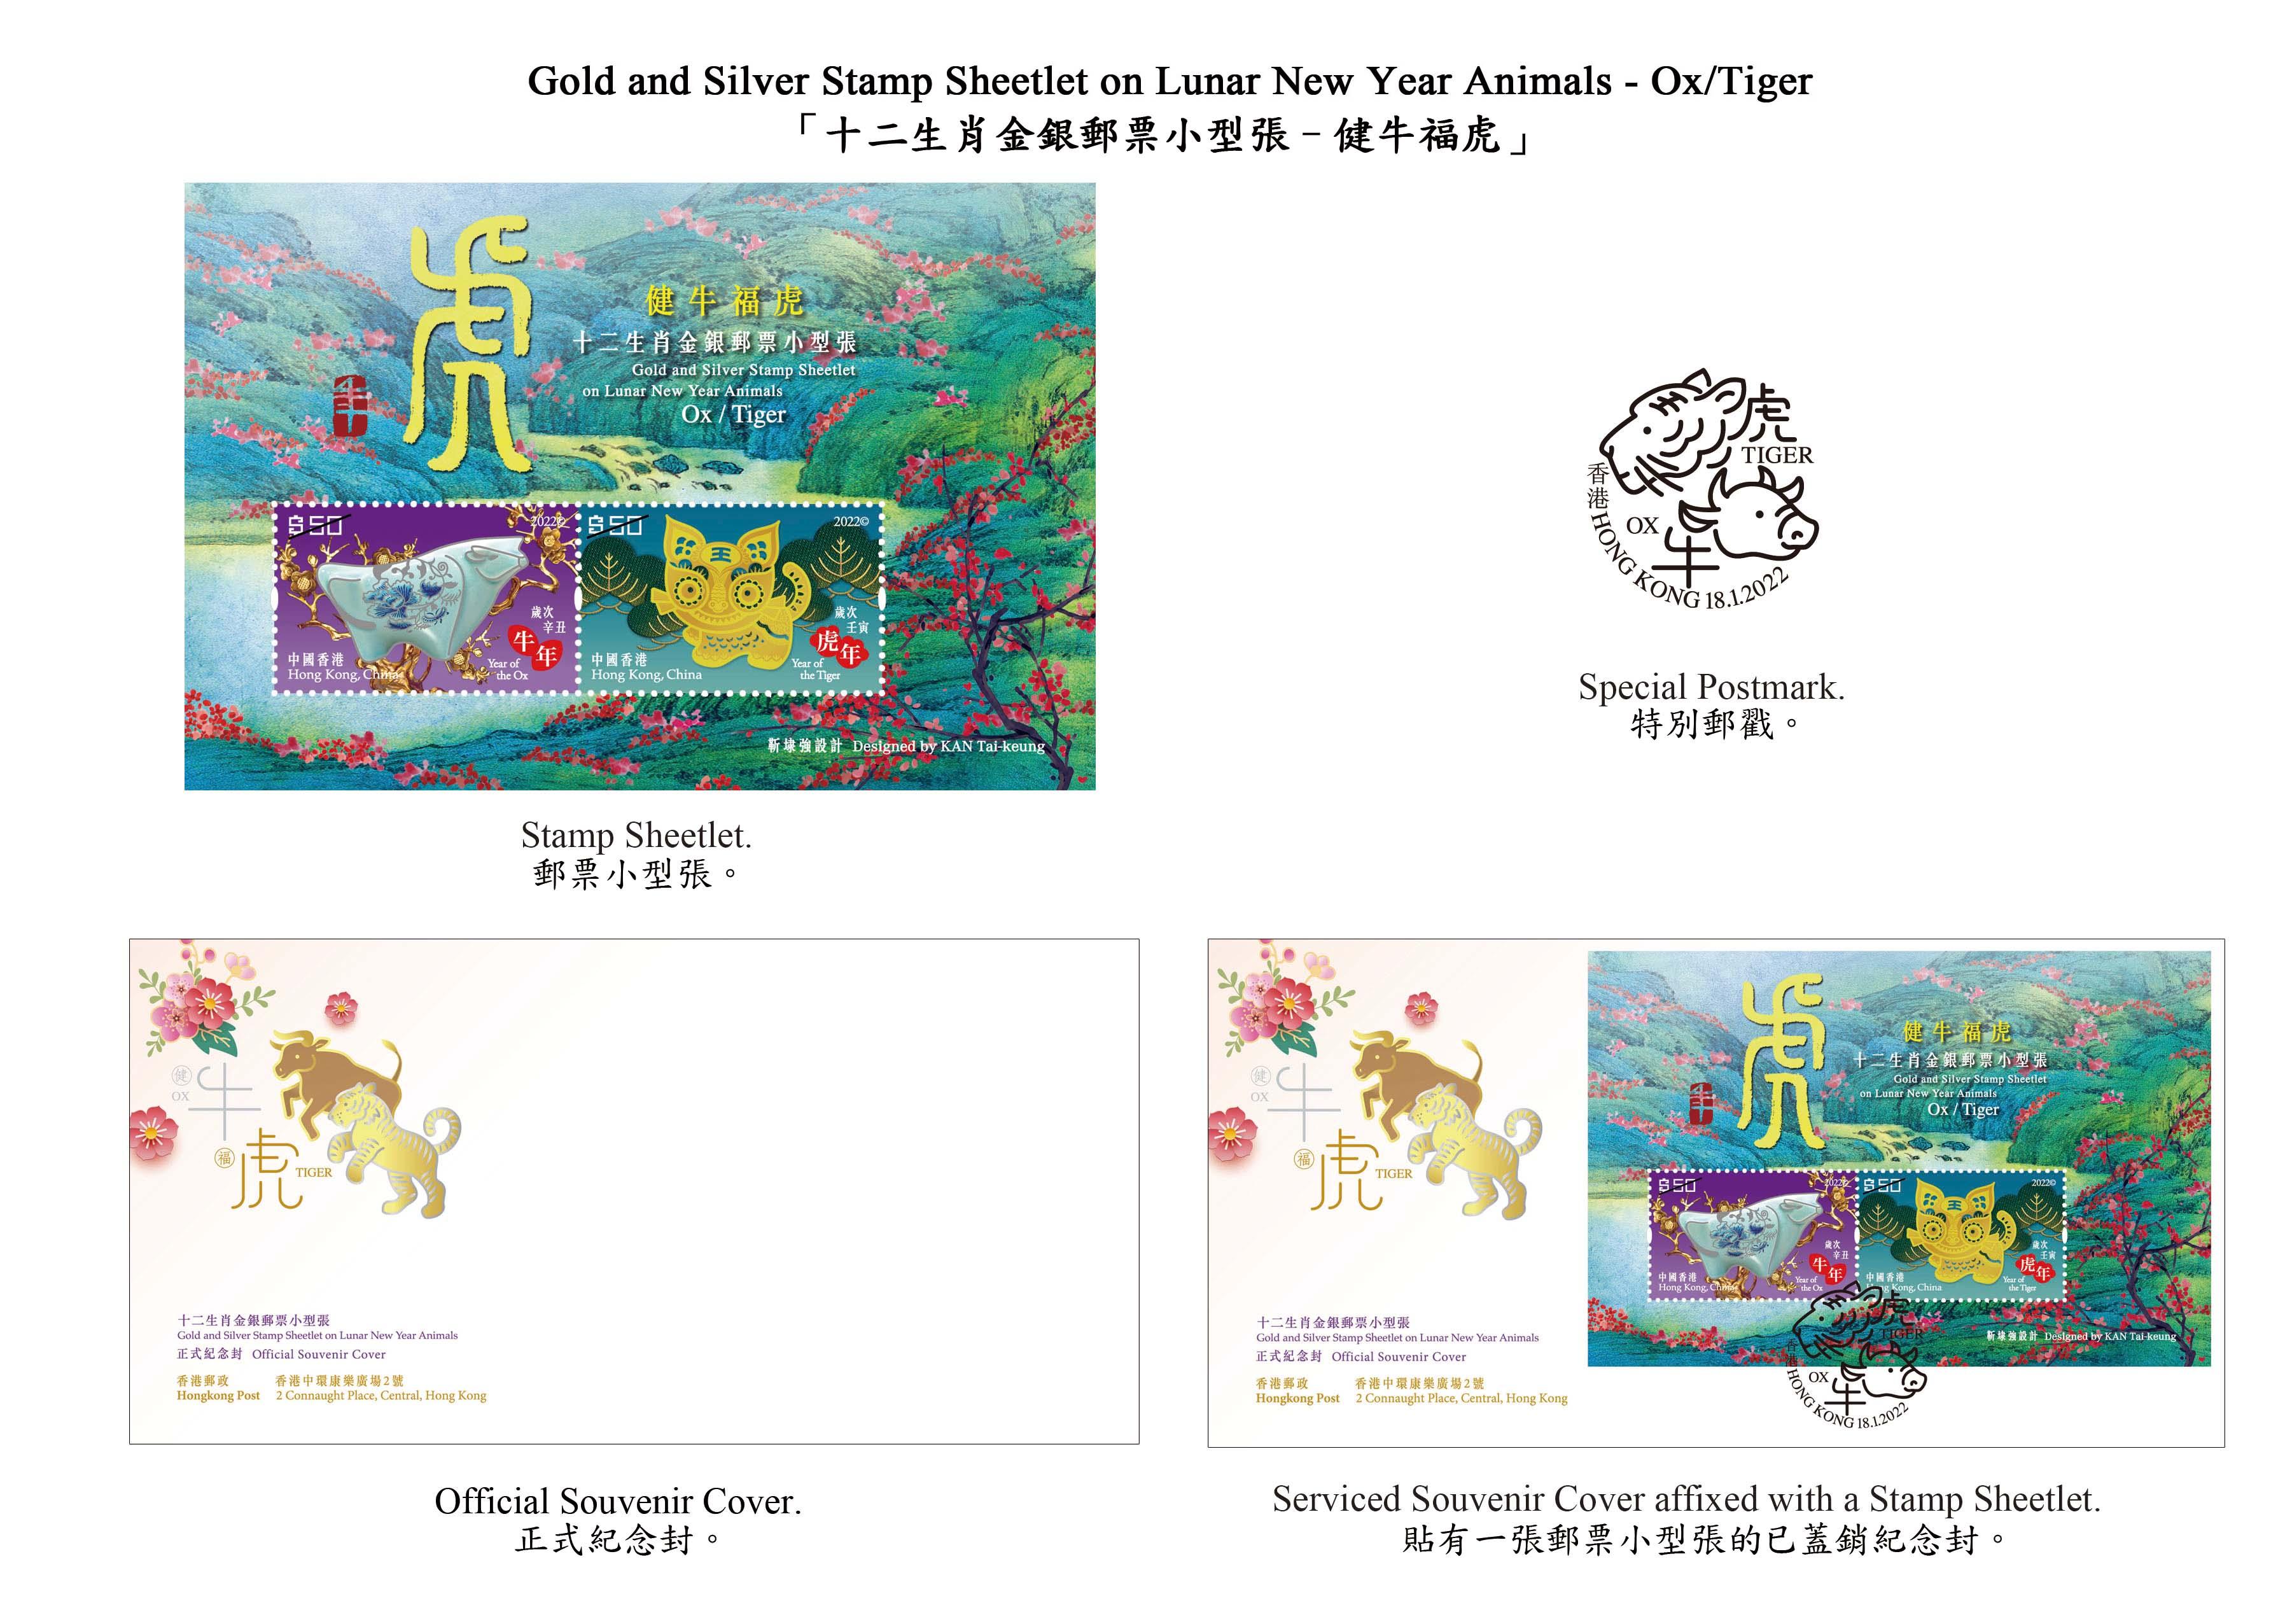 香港邮政一月十八日（星期二）发行以「岁次壬寅（虎年）」为题的特别邮票及相关集邮品，同日亦推出「十二生肖金银邮票小型张──健牛福虎」。图示以「健牛福虎」为题的邮票小型张、纪念封和特别邮戳。 